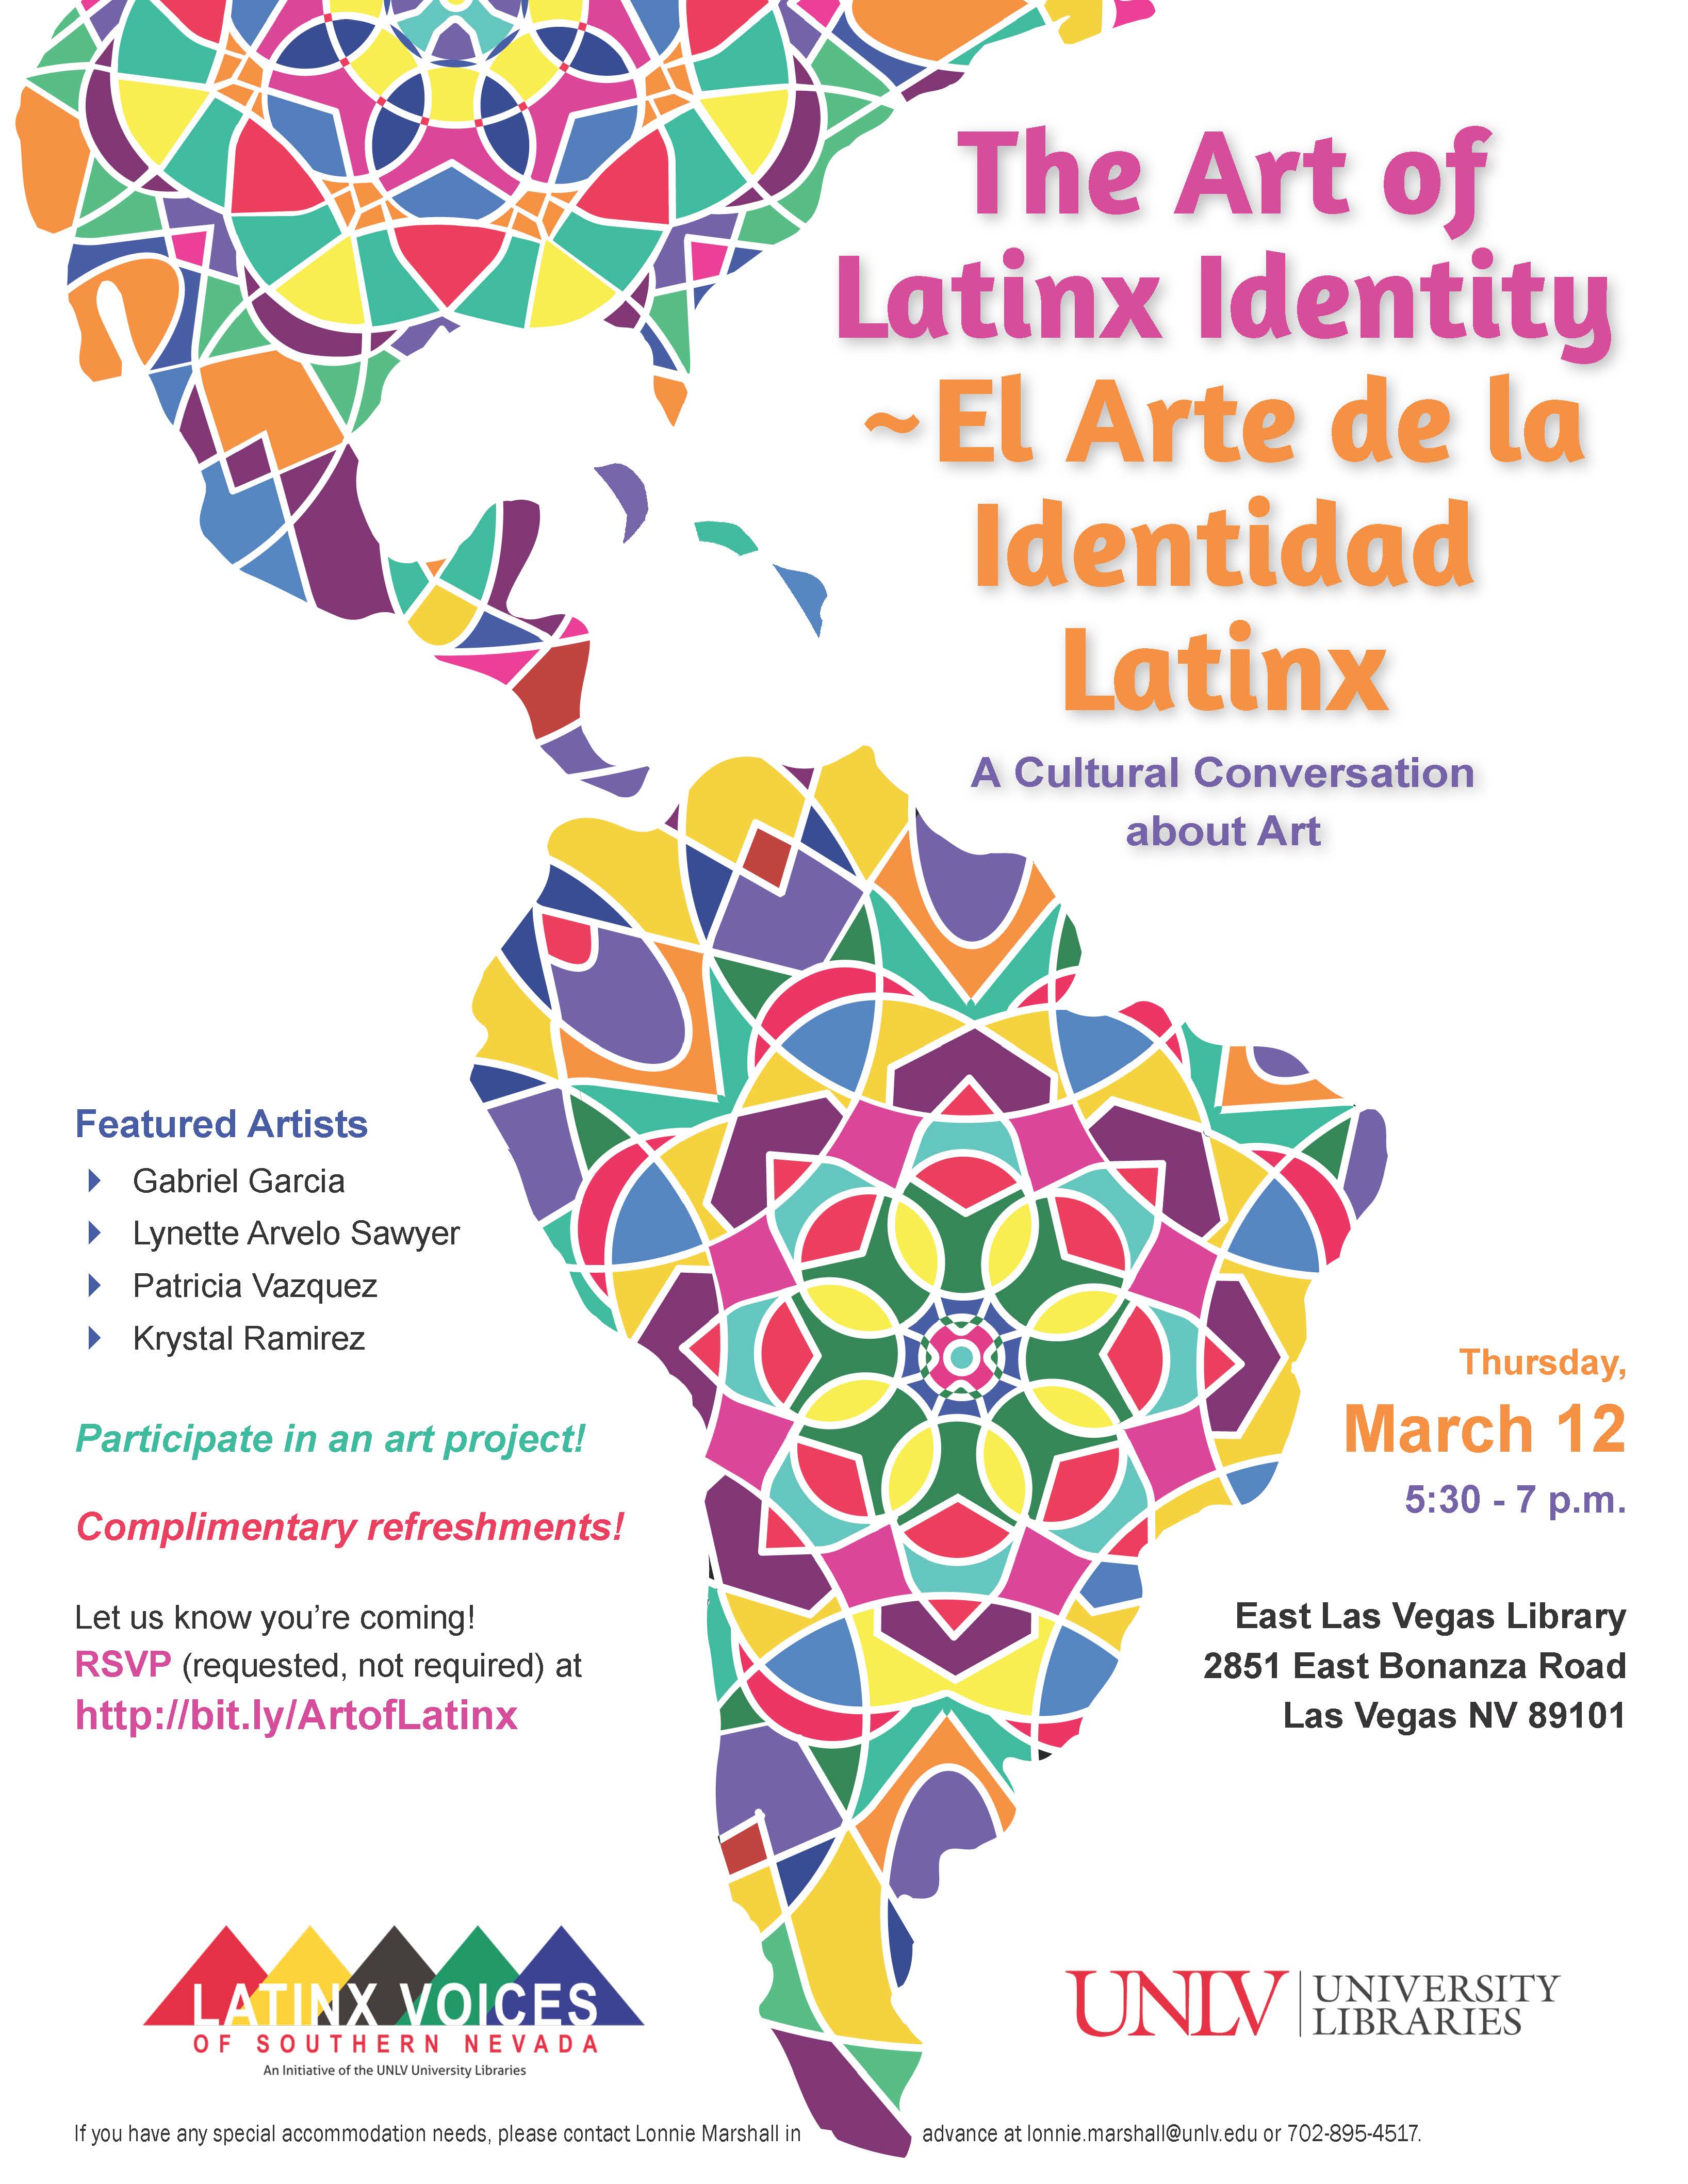 The Art of Latinx Identity ~ El Arte de la Identidad Latinx: A Cultural Conversation about Art